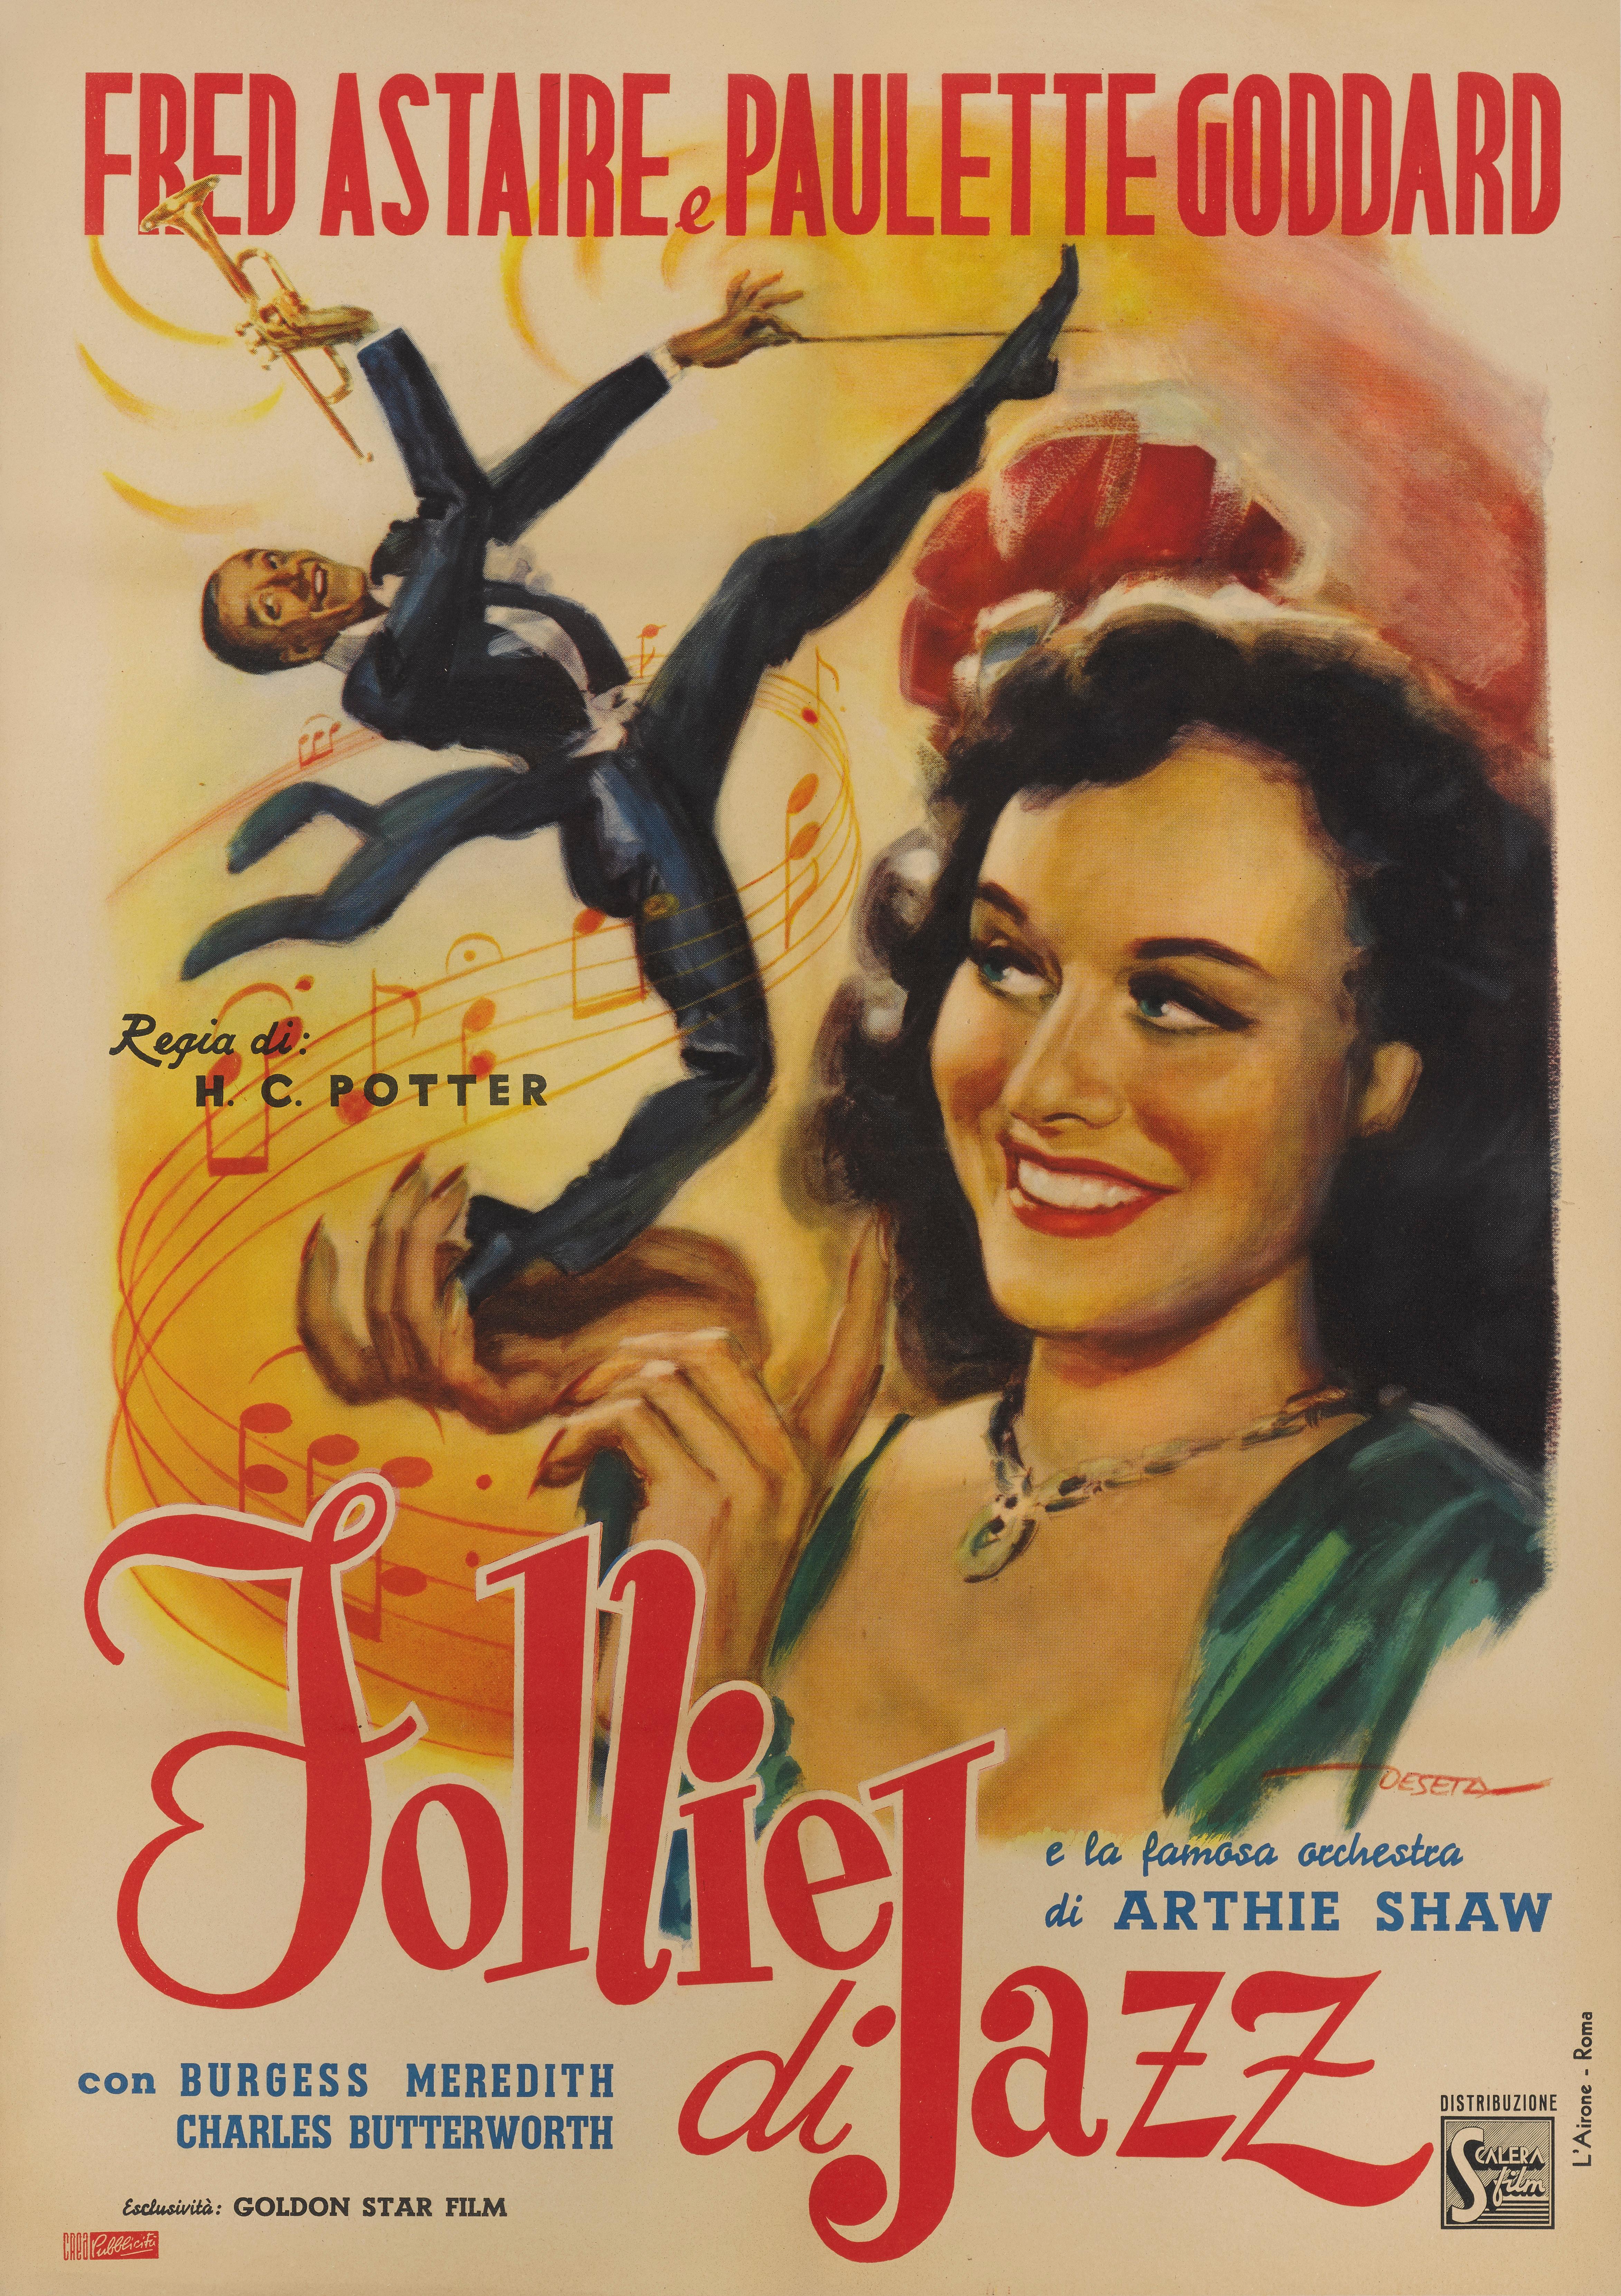 Originales italienisches Filmplakat für die musikalische Komödie second chorus von 1940.
Das Hollywood-Musical mit Paulette Goddard und Fred Astaire in den Hauptrollen und mit Artie Shaw, Burgess Meredith und Charles Butterworth. Die Musik wurde